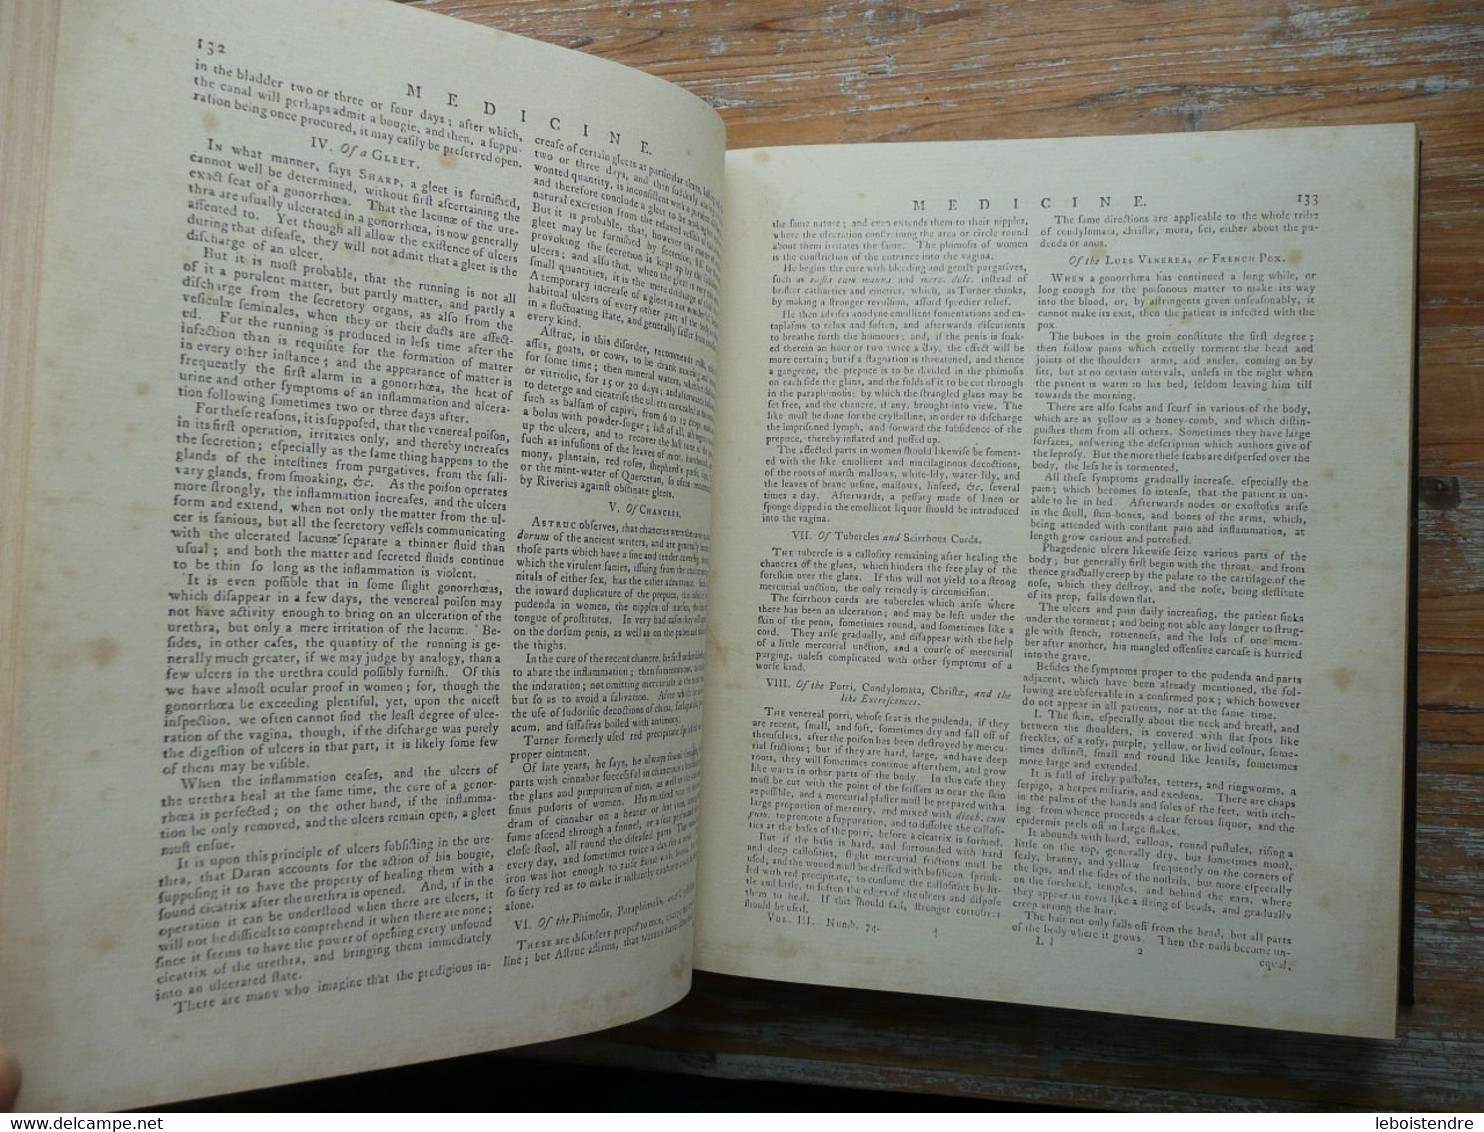 ENCYCLOPAEDIA BRITANNICA IN THREE VOLUMES 1771 EN 3 TOMES FAC SIMILE DE LA CELEBRE ENCYCLOPEDIE NON DATEE ENCYCLOPEDIA - Cultura